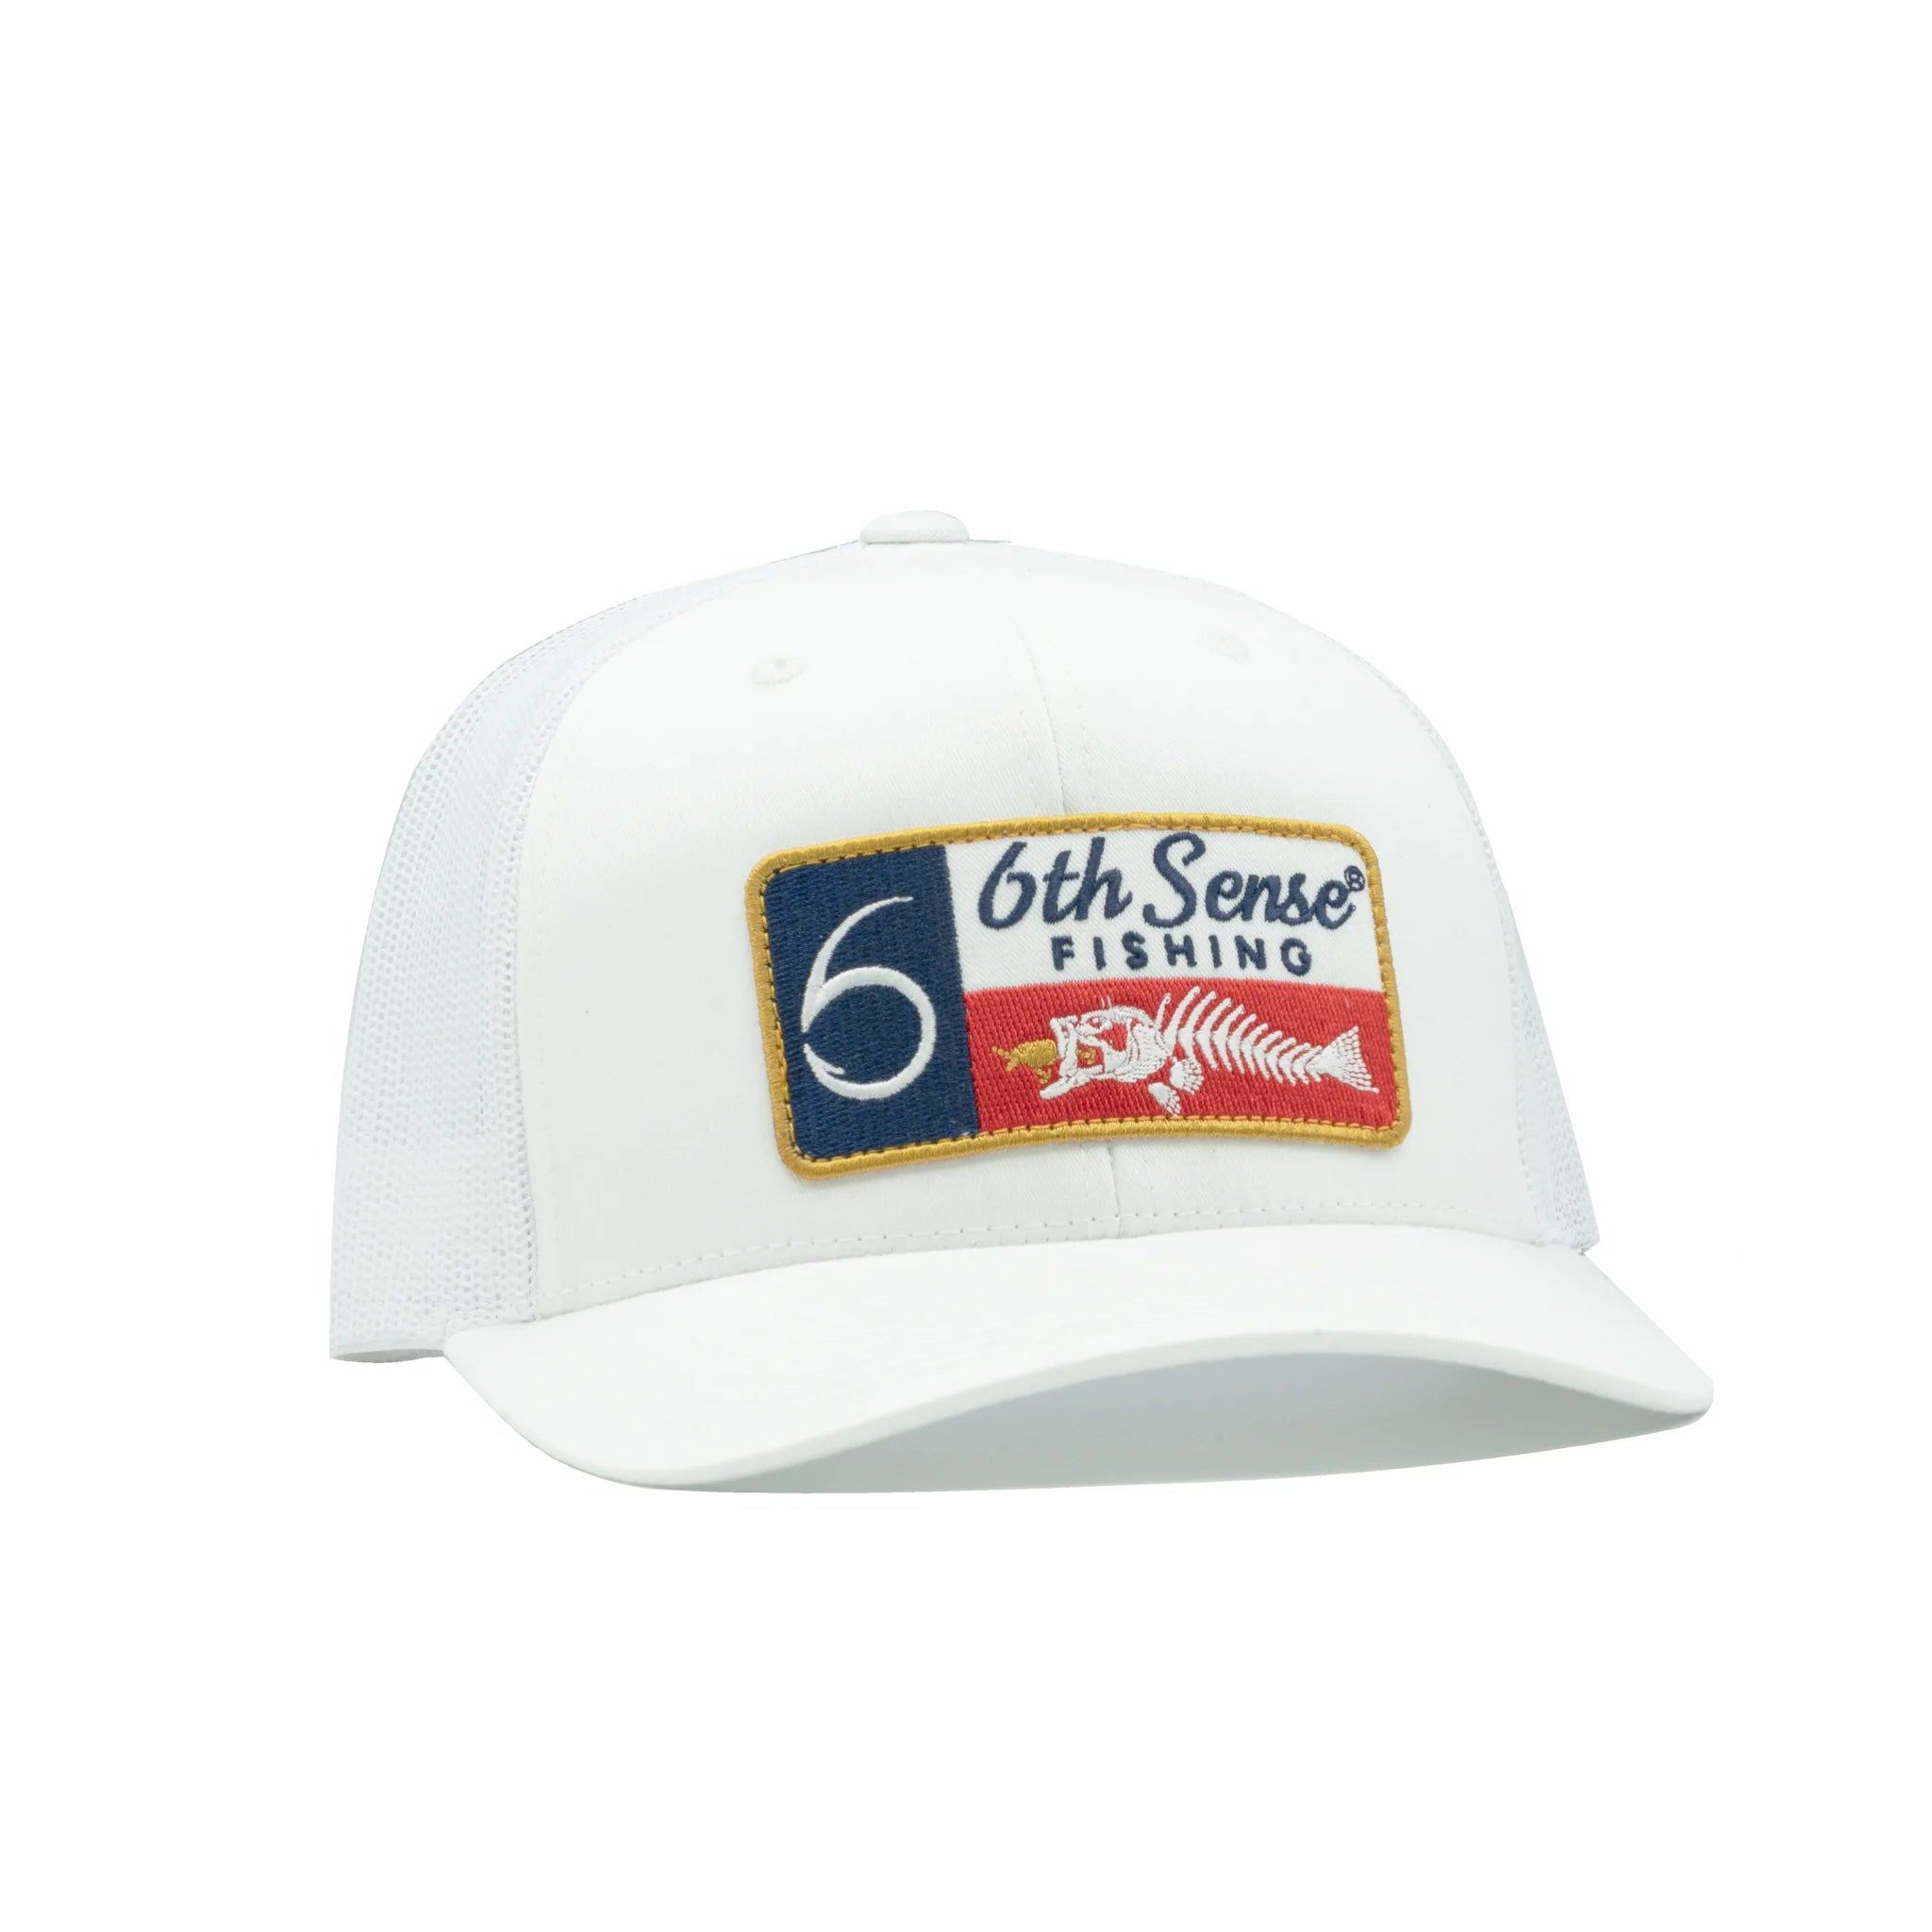 Buy texas-fishbones-white 6TH SENSE HATS